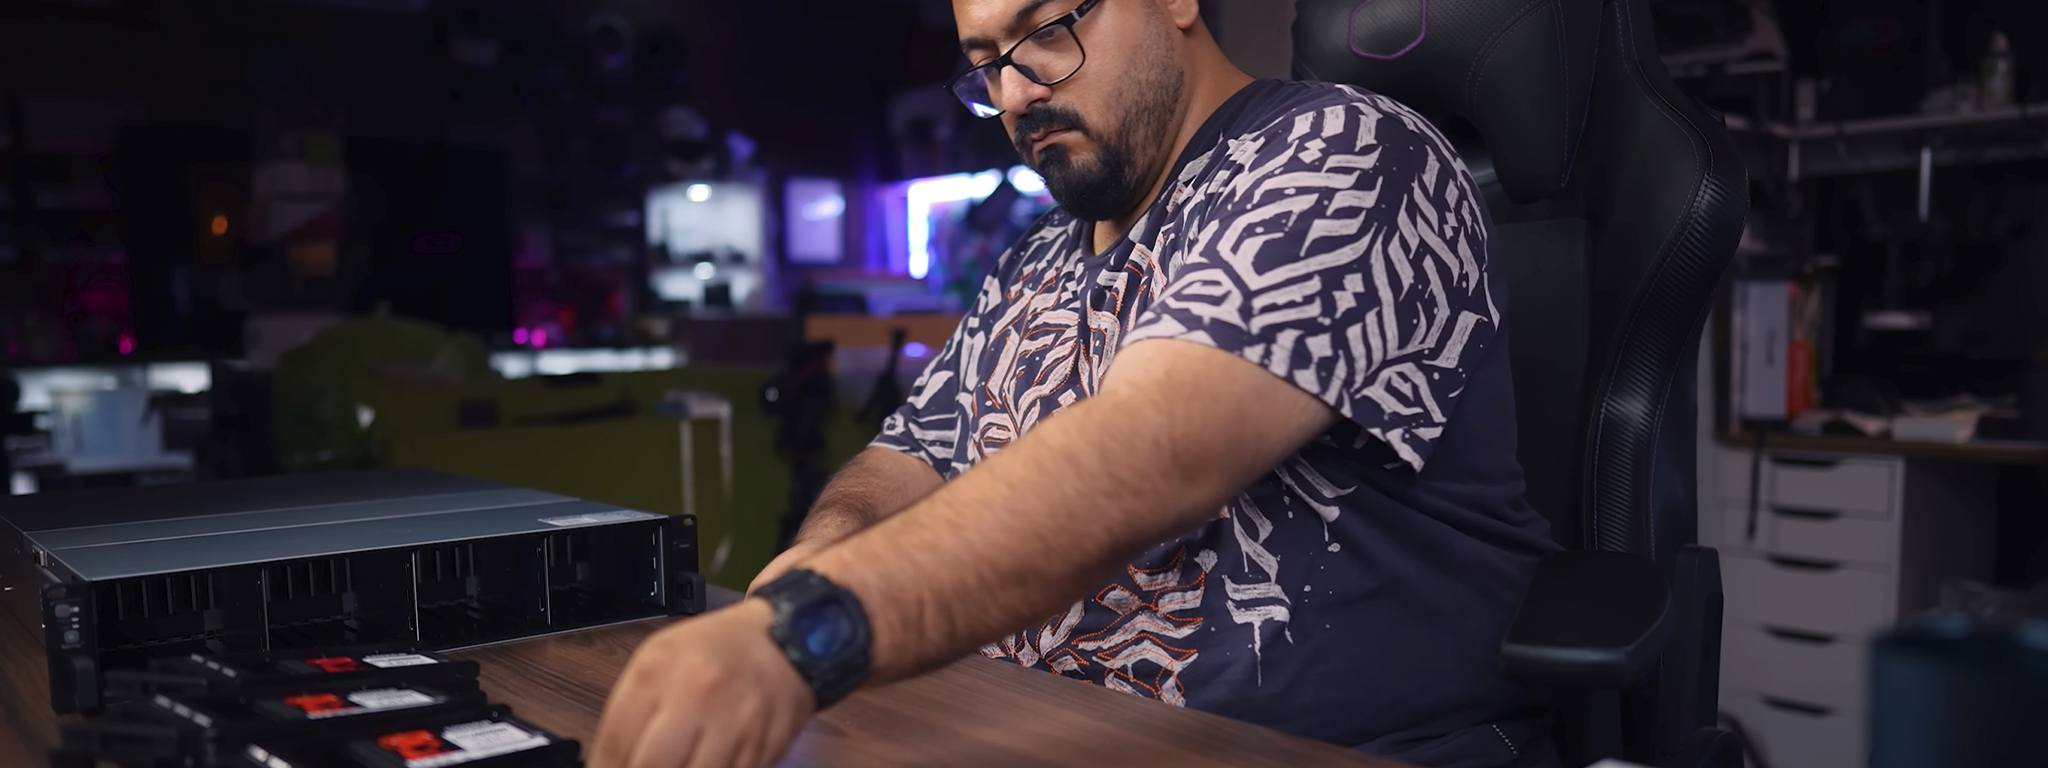 Салах Хамед — инфлюенсер канала Android Basha — устанавливает твердотельные накопители DC600M в серверную стойку на своем столе